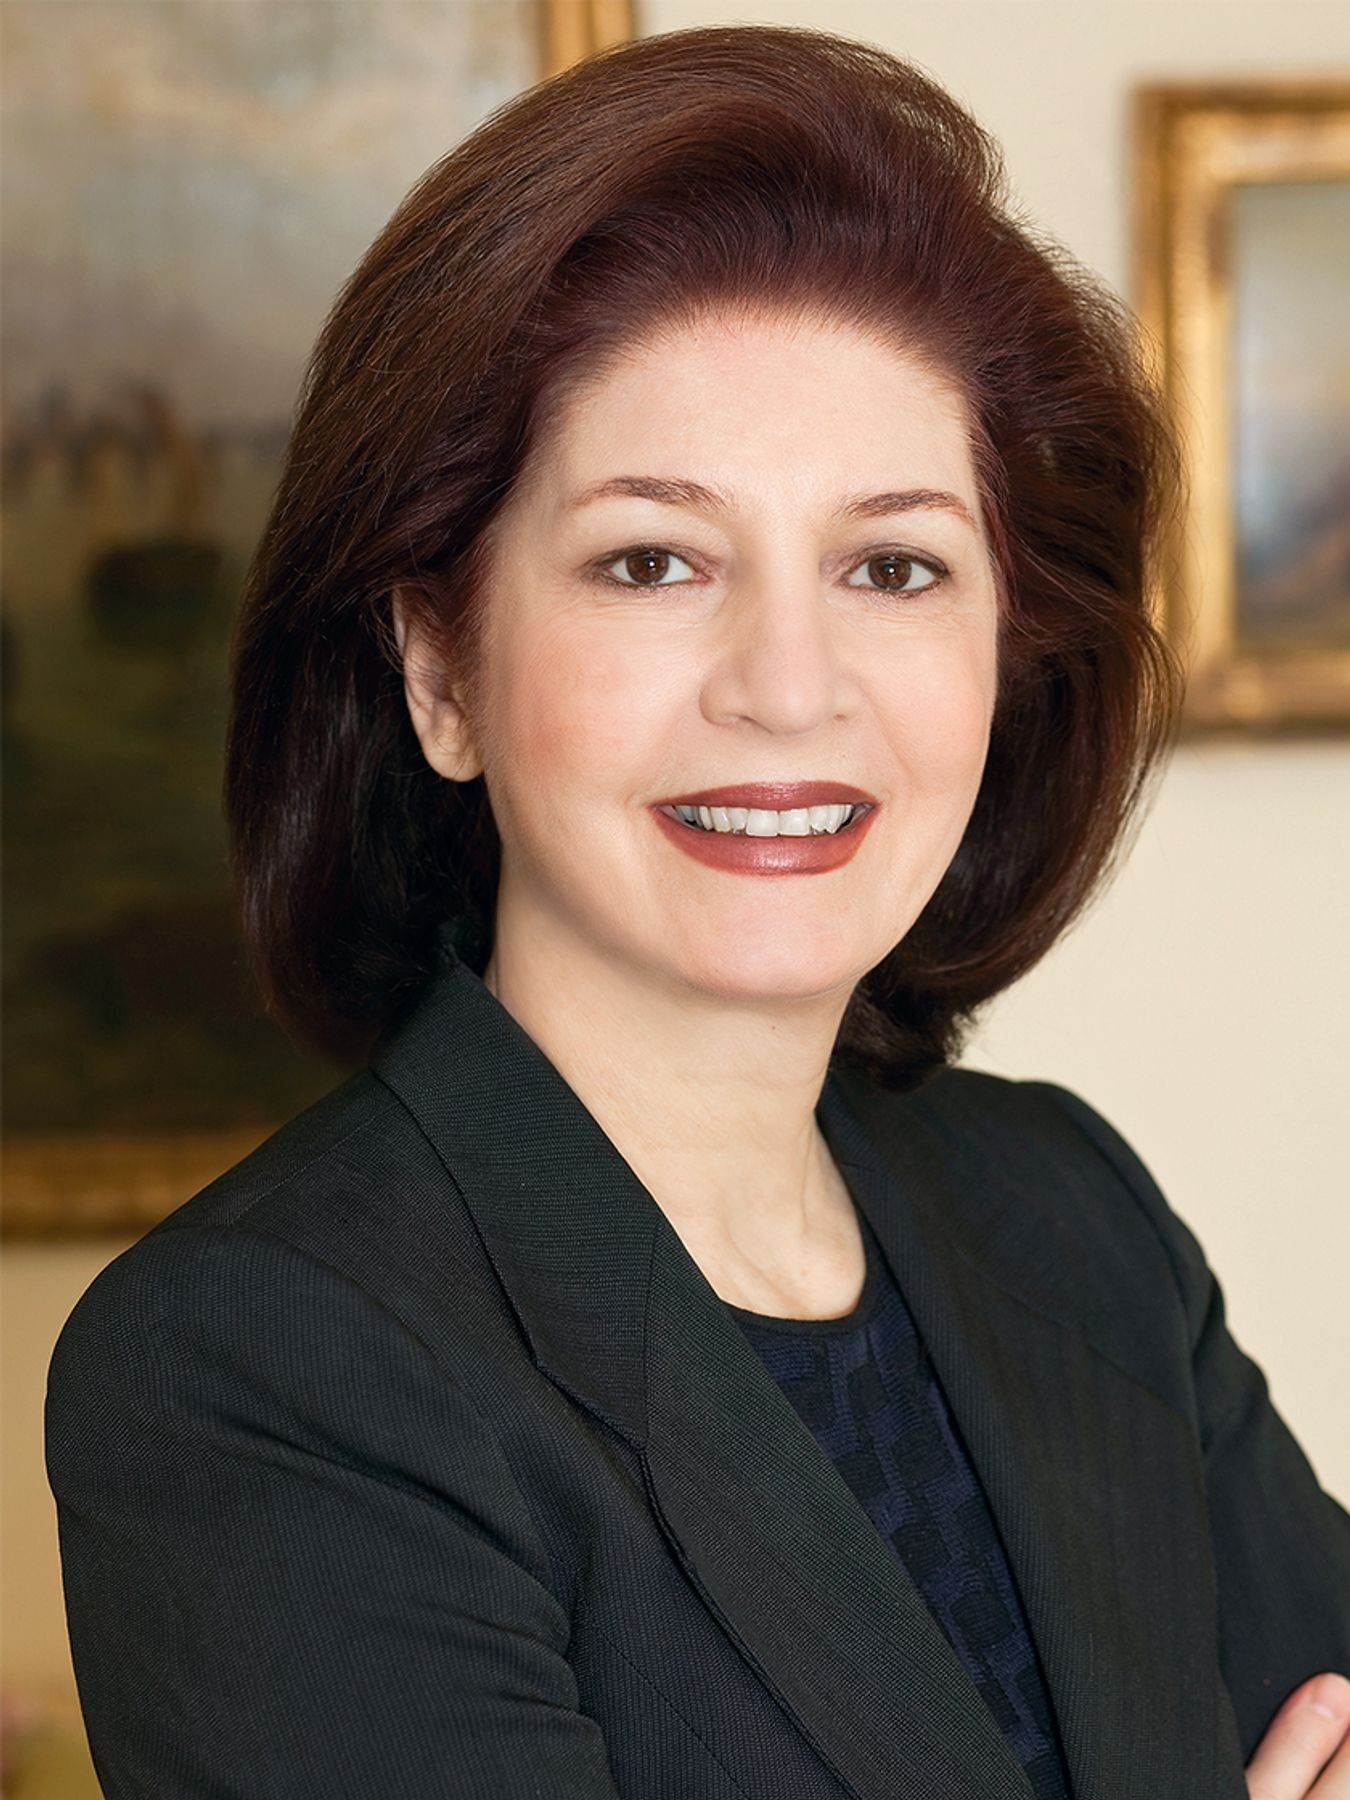 Louise C. Beit